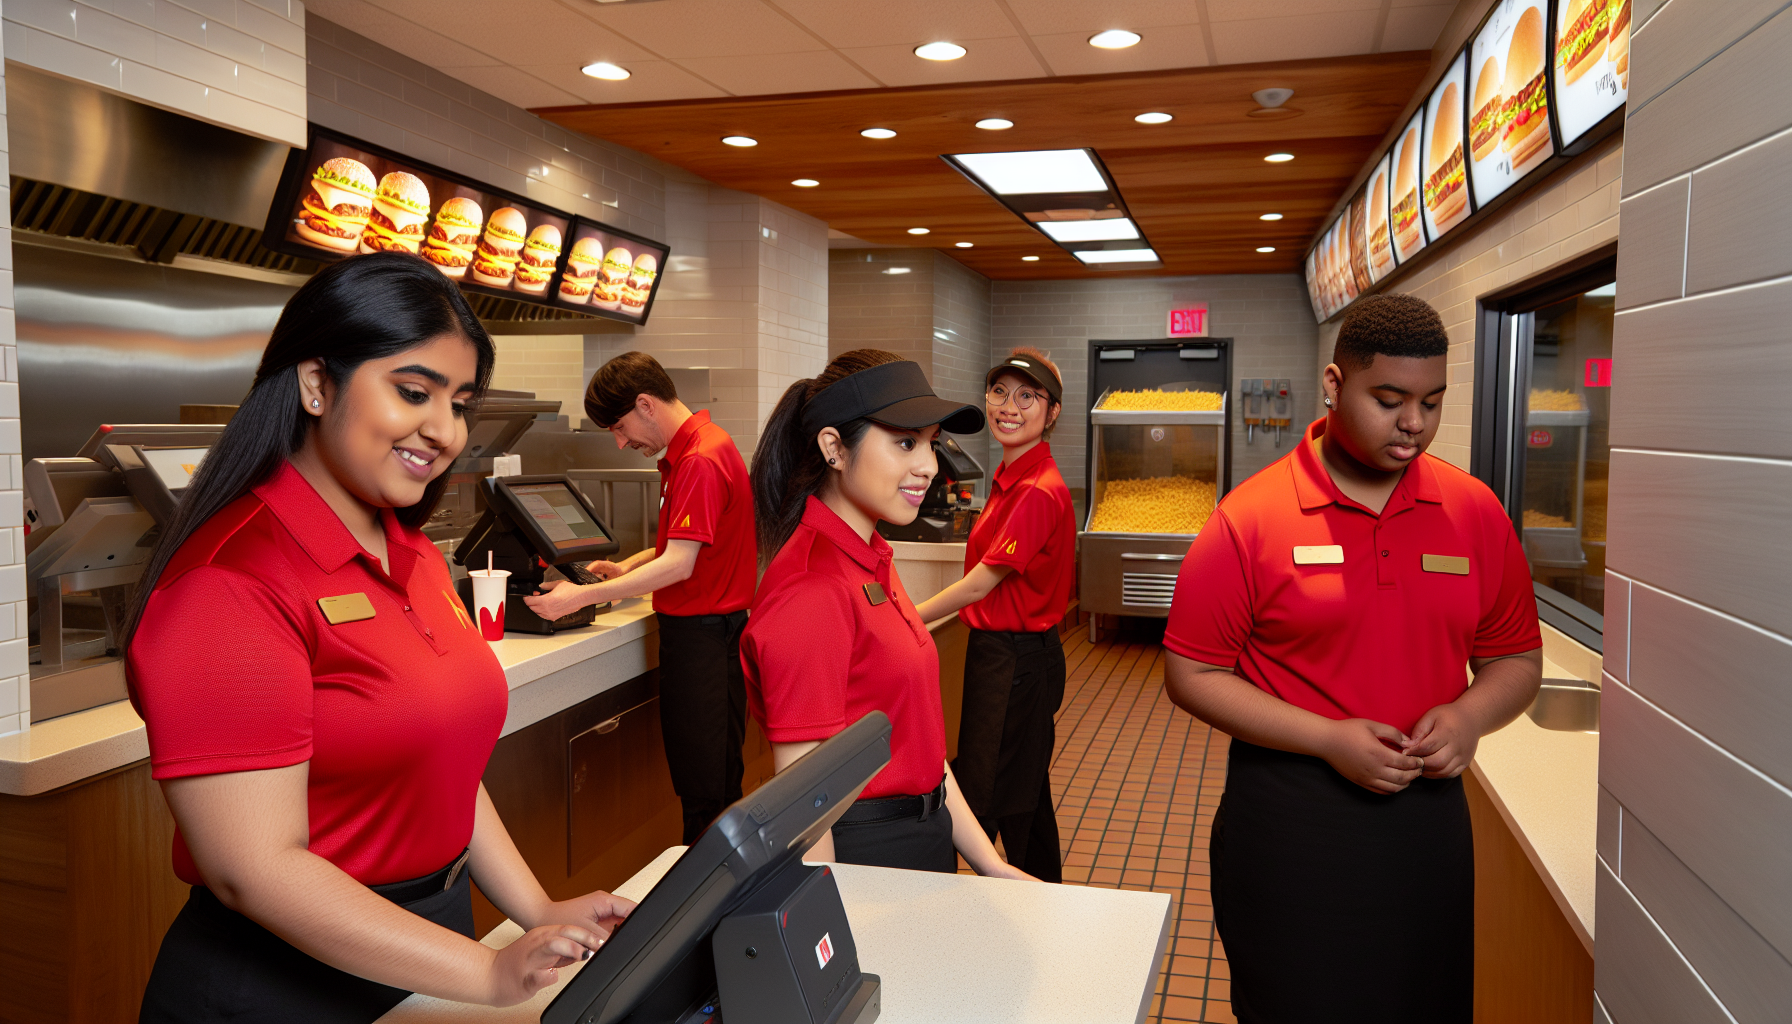 Employees in McDonald's uniform